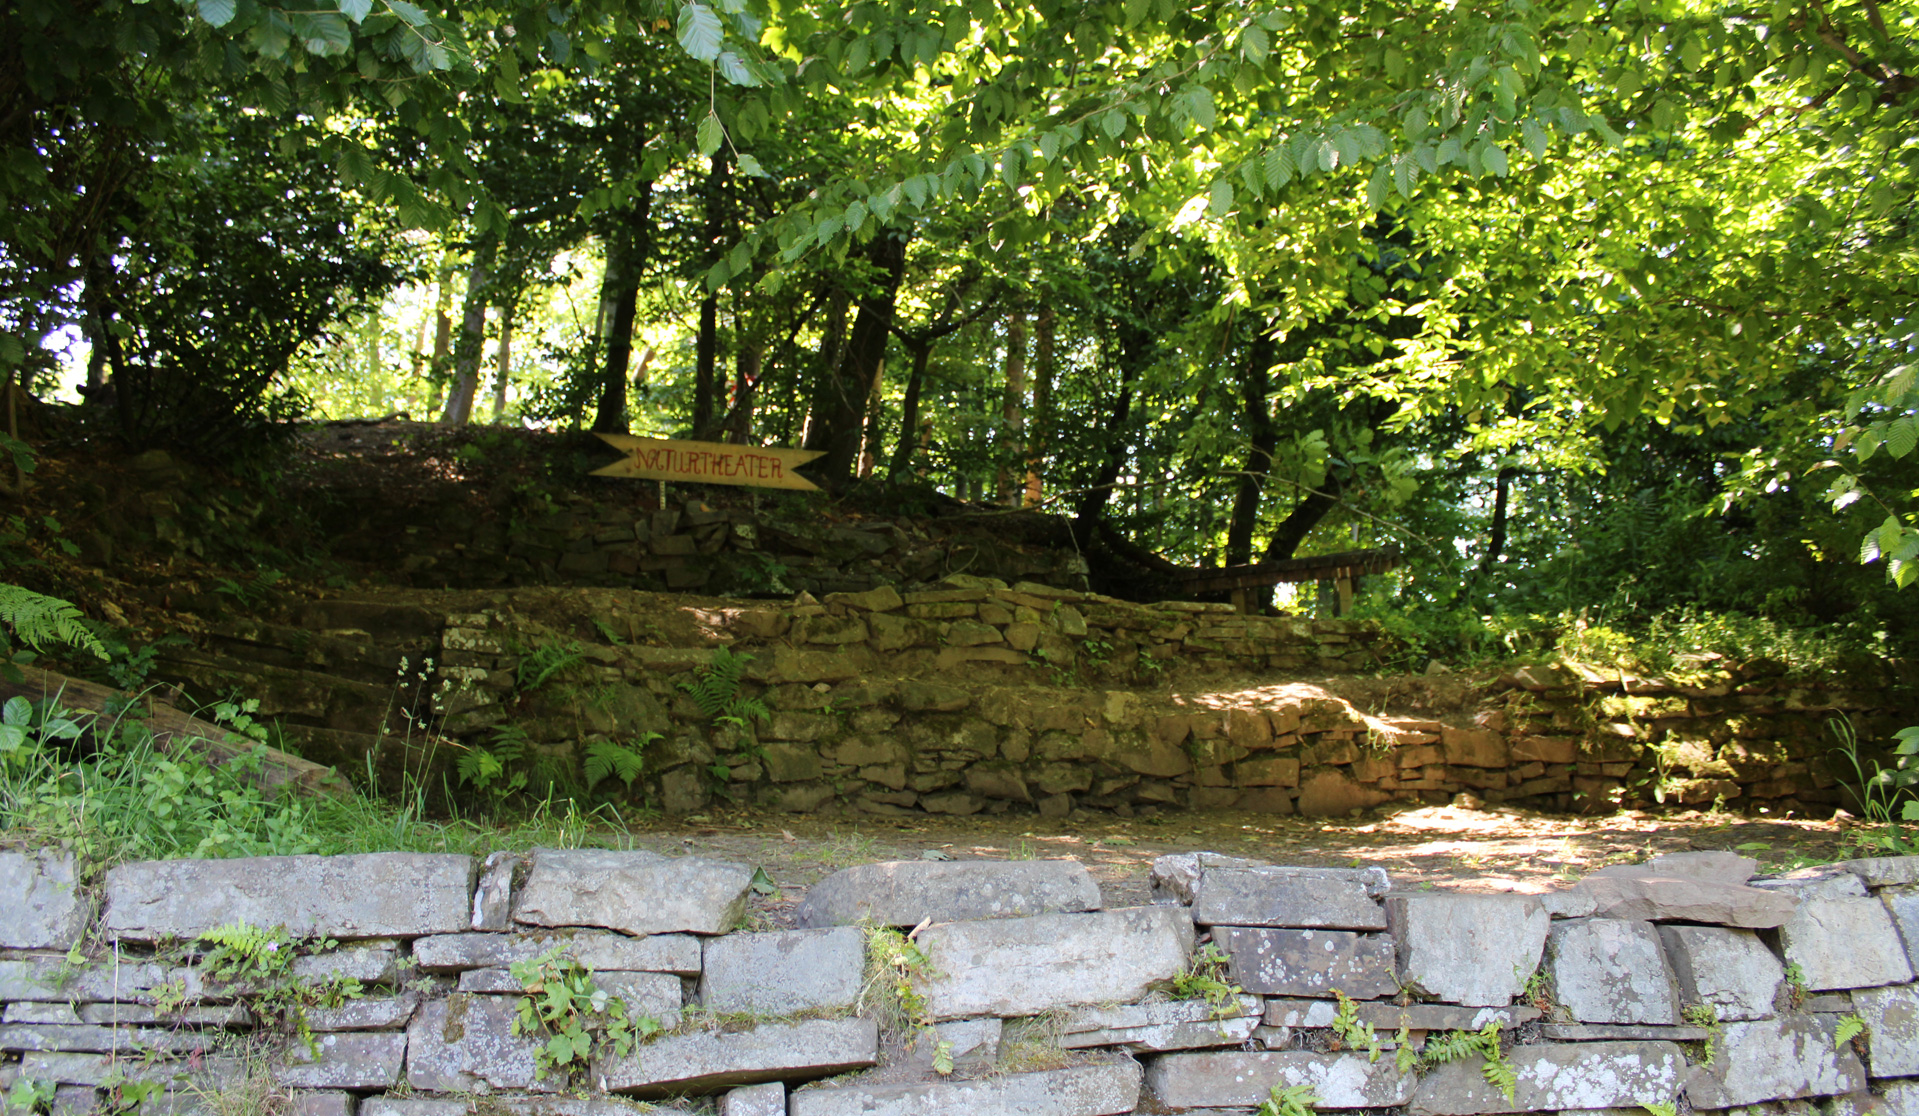 Blick auf eine Naturbühne oberhalb einer Natursteinmauer